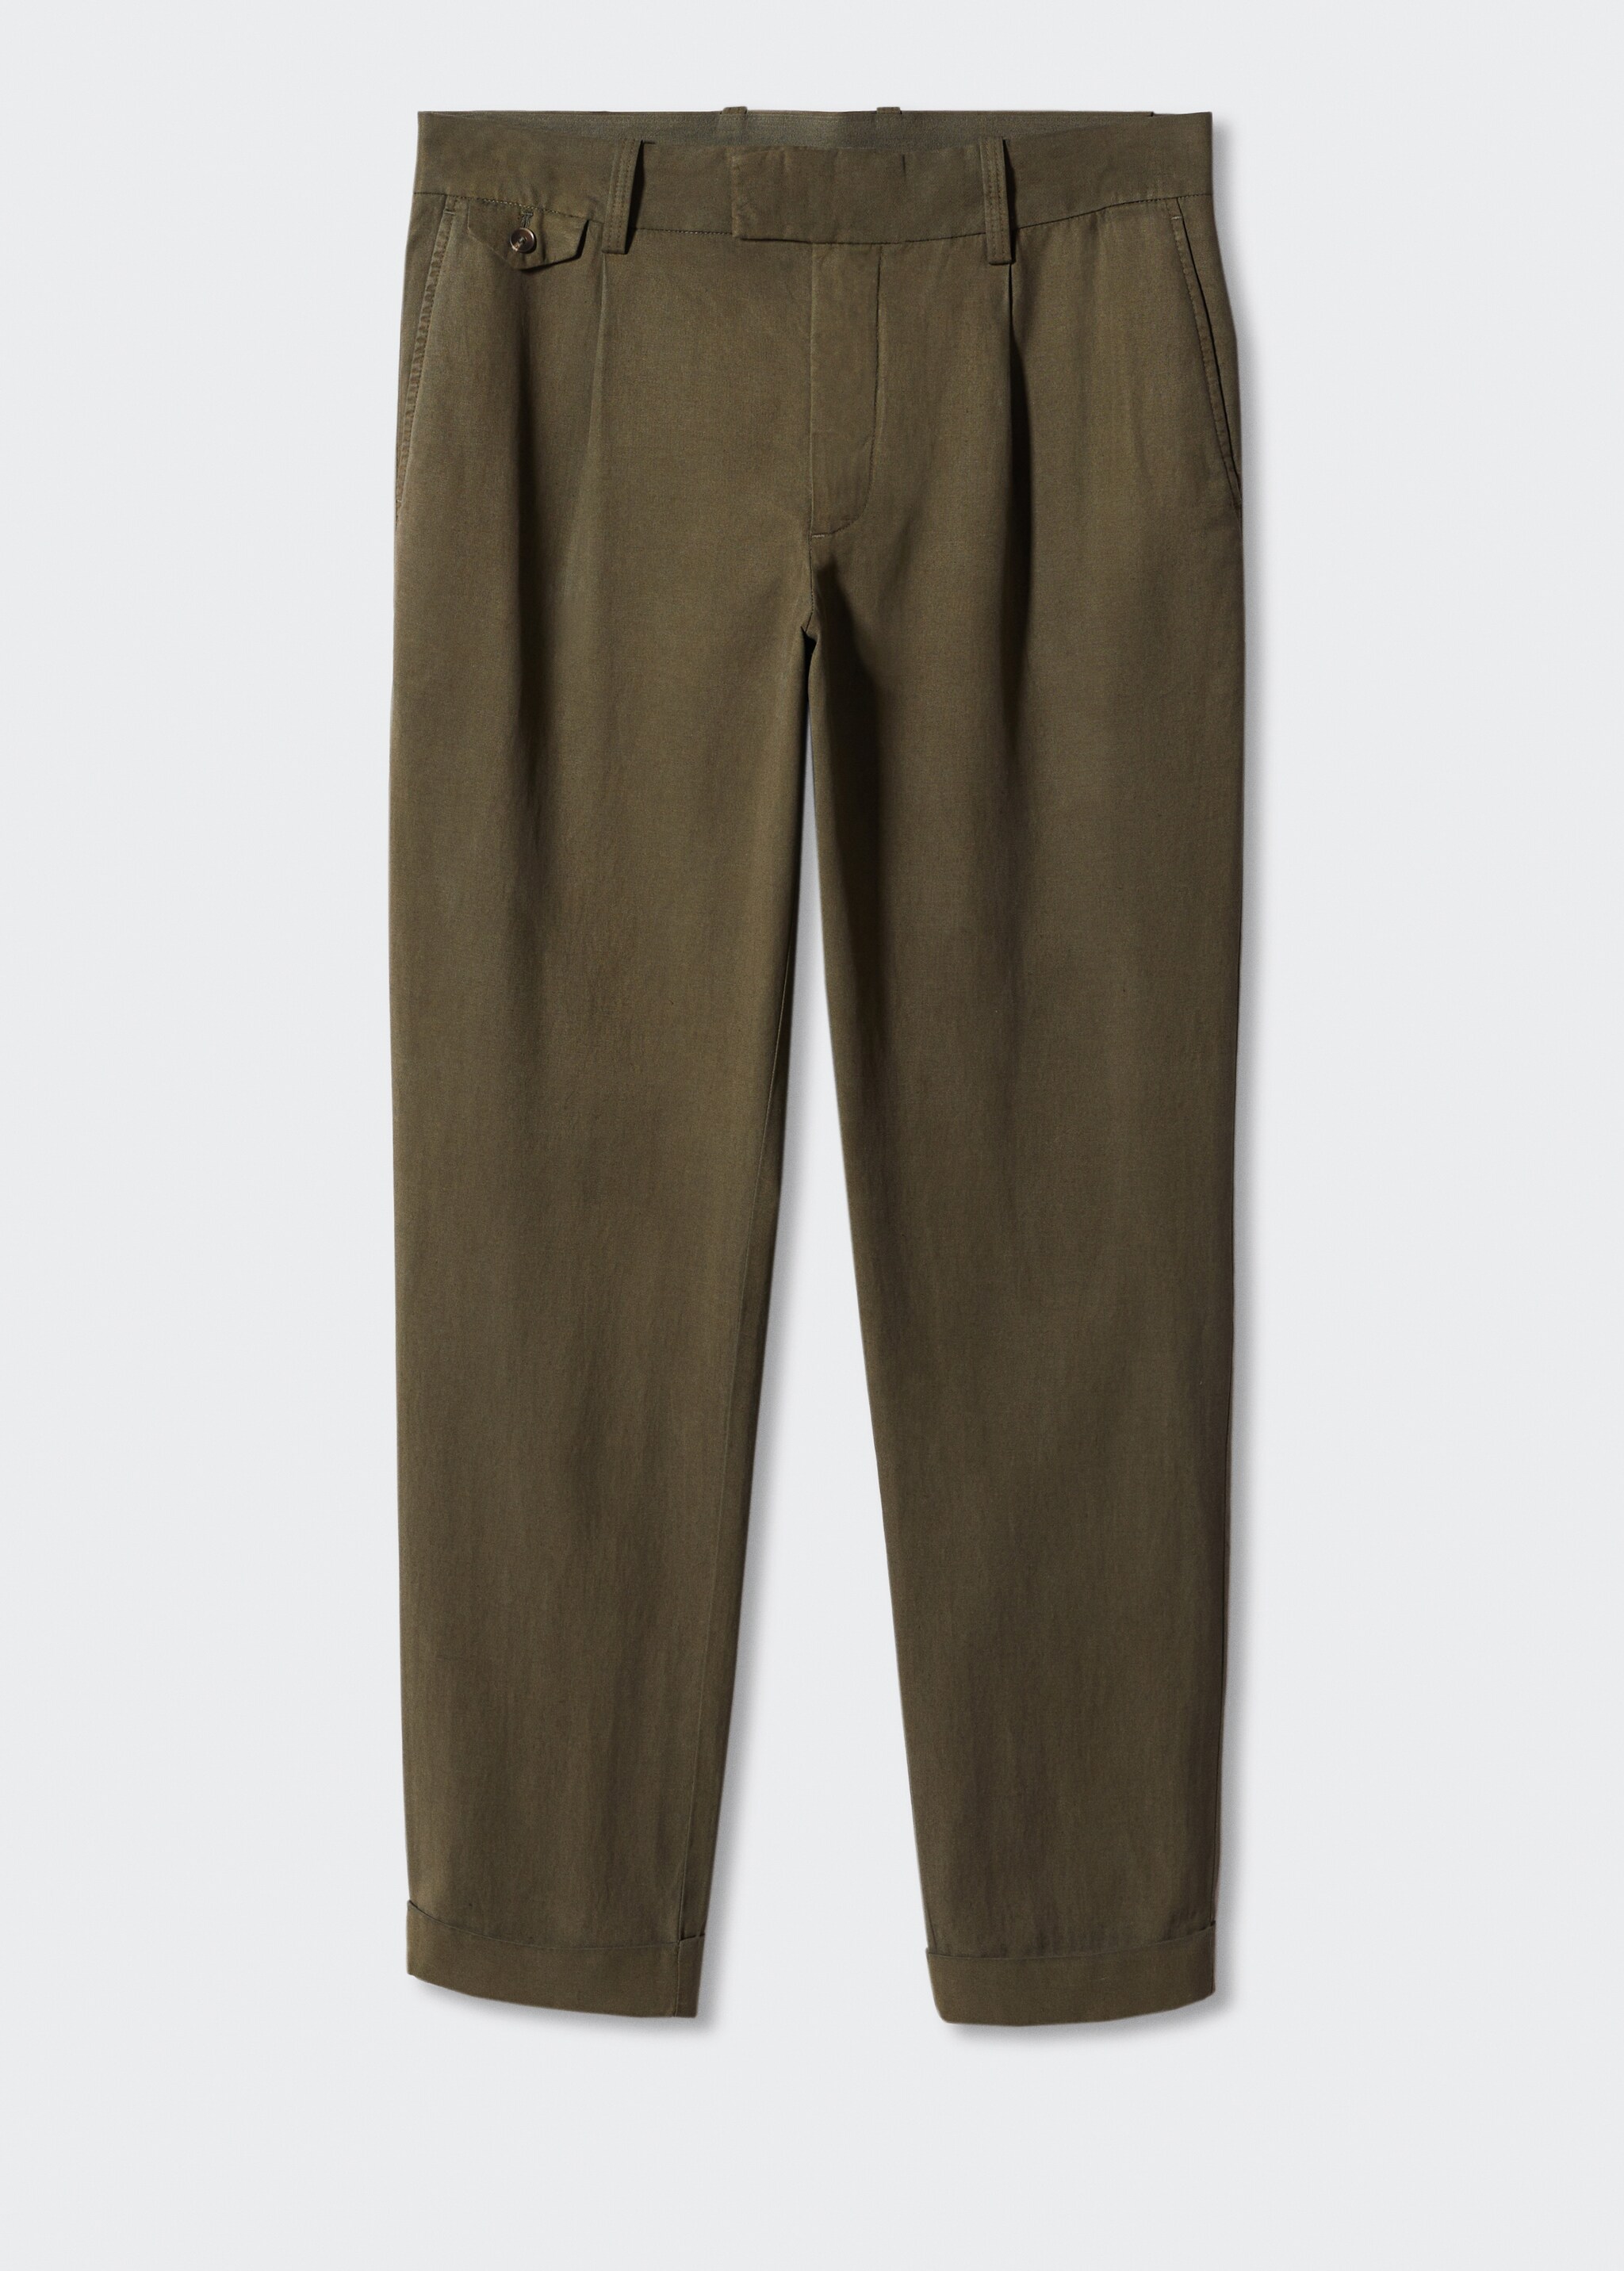 Pantalón tapered fit pinzas - Artículo sin modelo